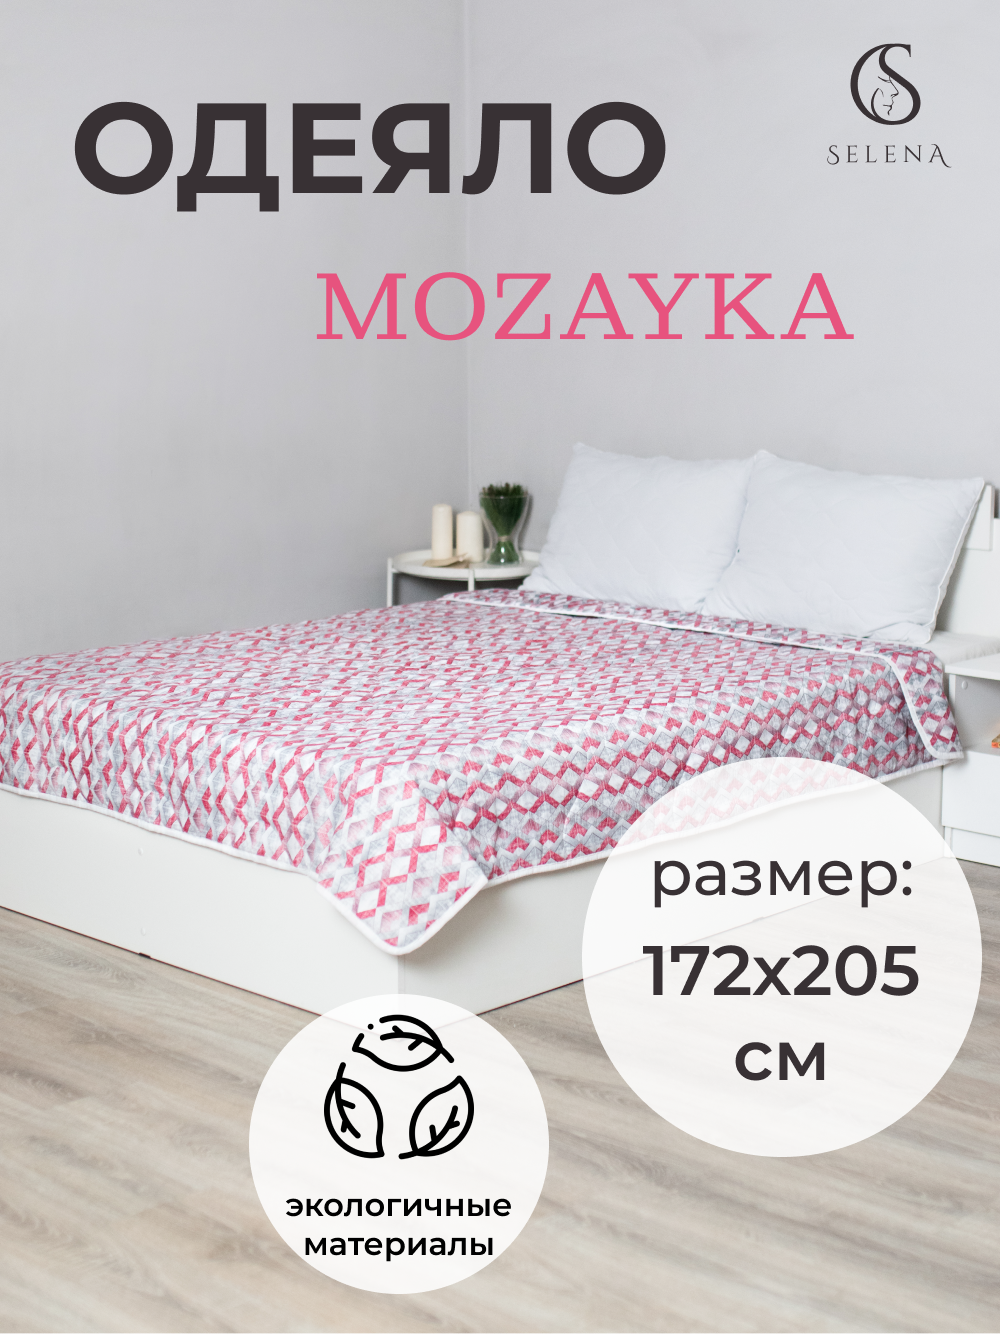 Одеяло SELENA Mozayka облегченное, 172 х 205 см